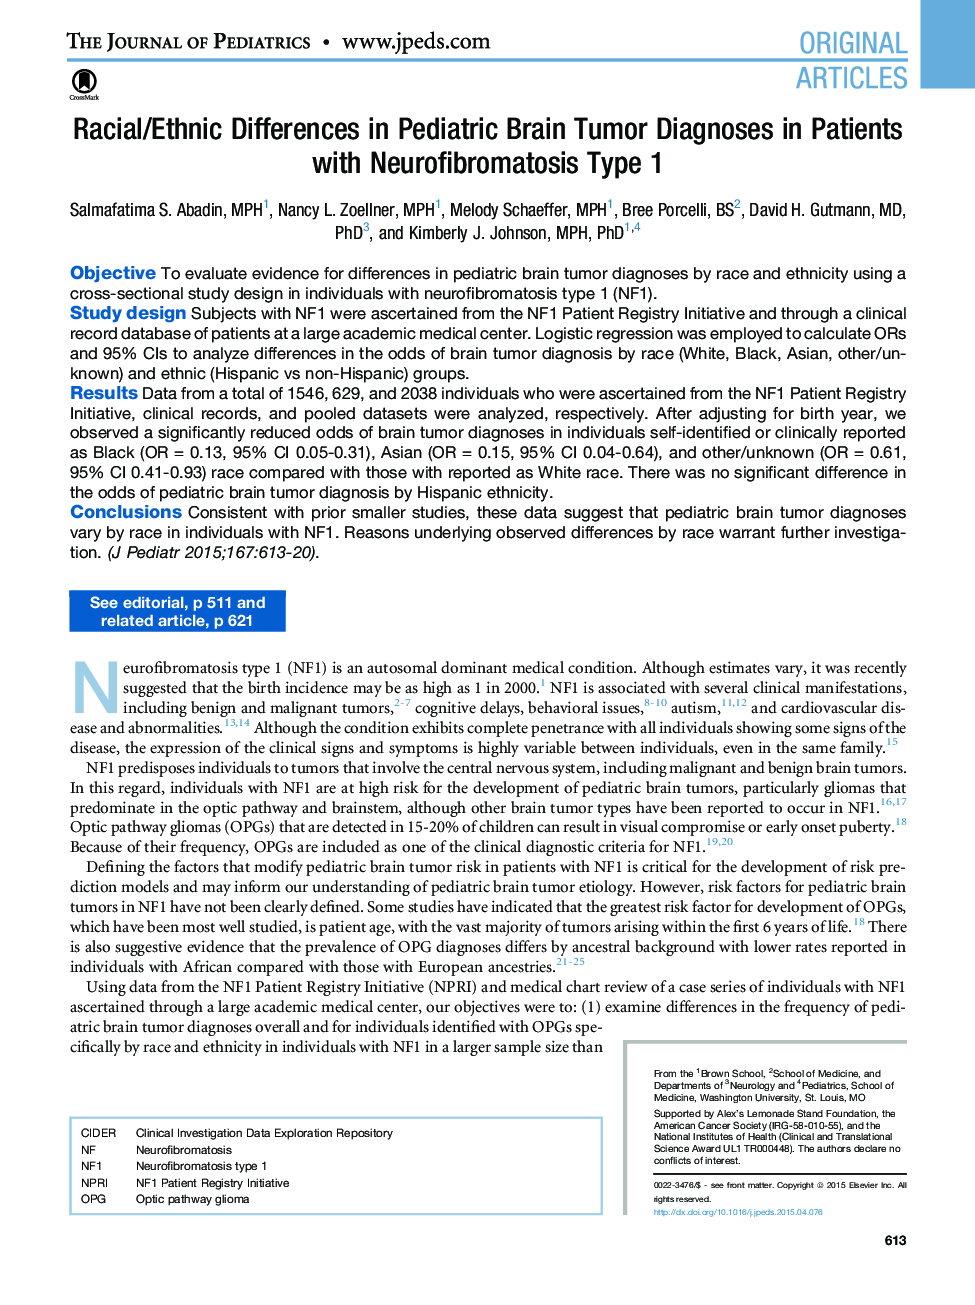 تفاوت های اصلی مقاله / نژادی در تشخیص تومور مغزی کودکان در بیماران مبتلا به نوروفیبروماتوز نوع 1 